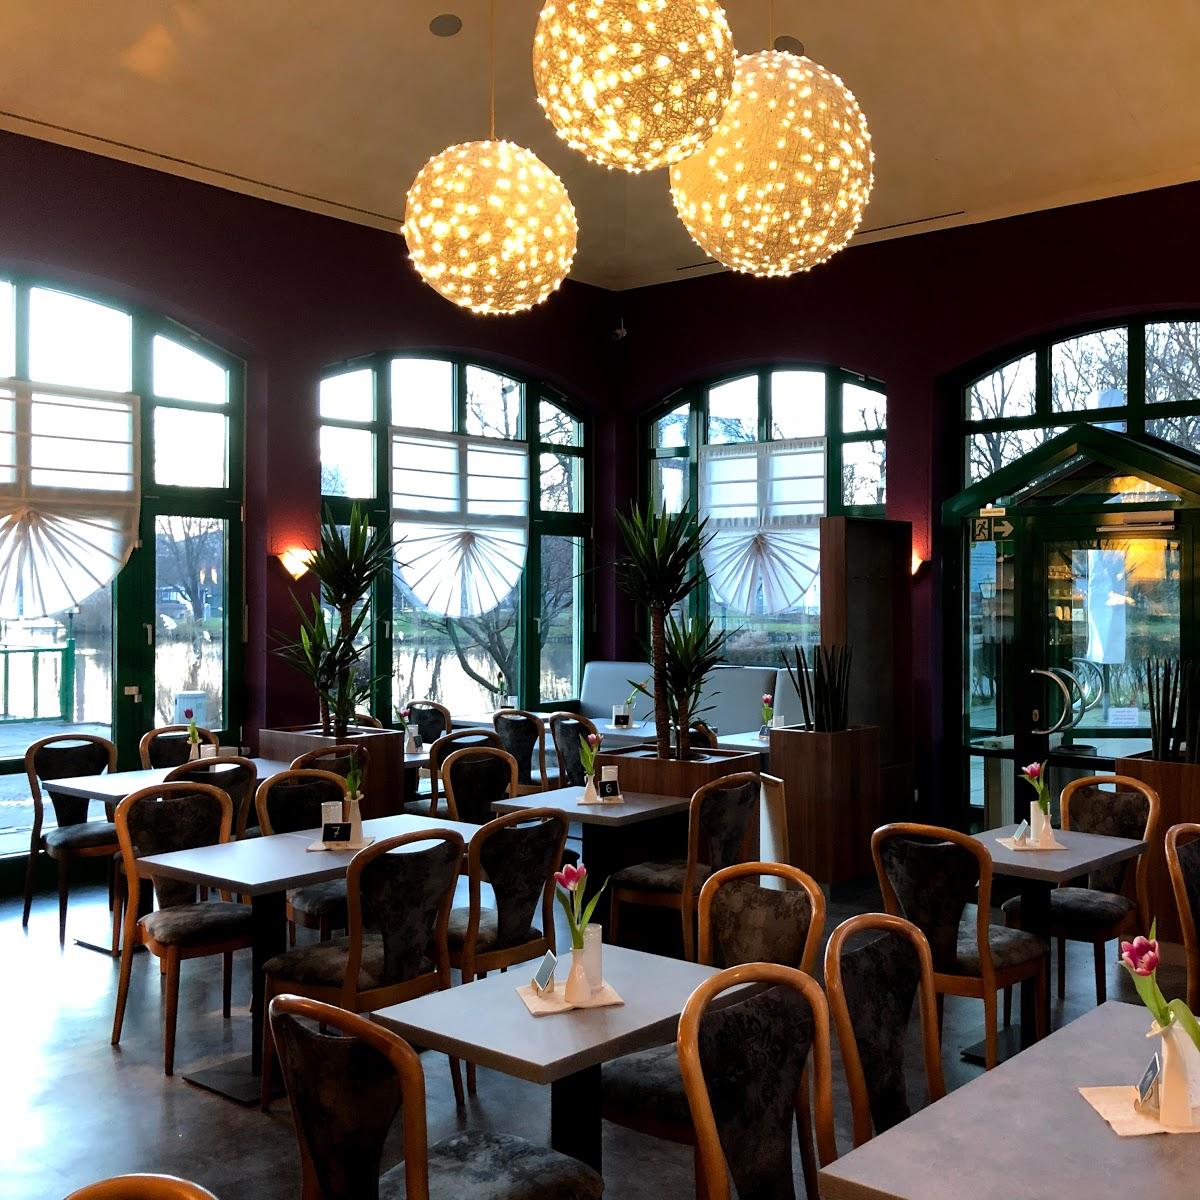 Restaurant "Café Milchhäuschen" in Chemnitz